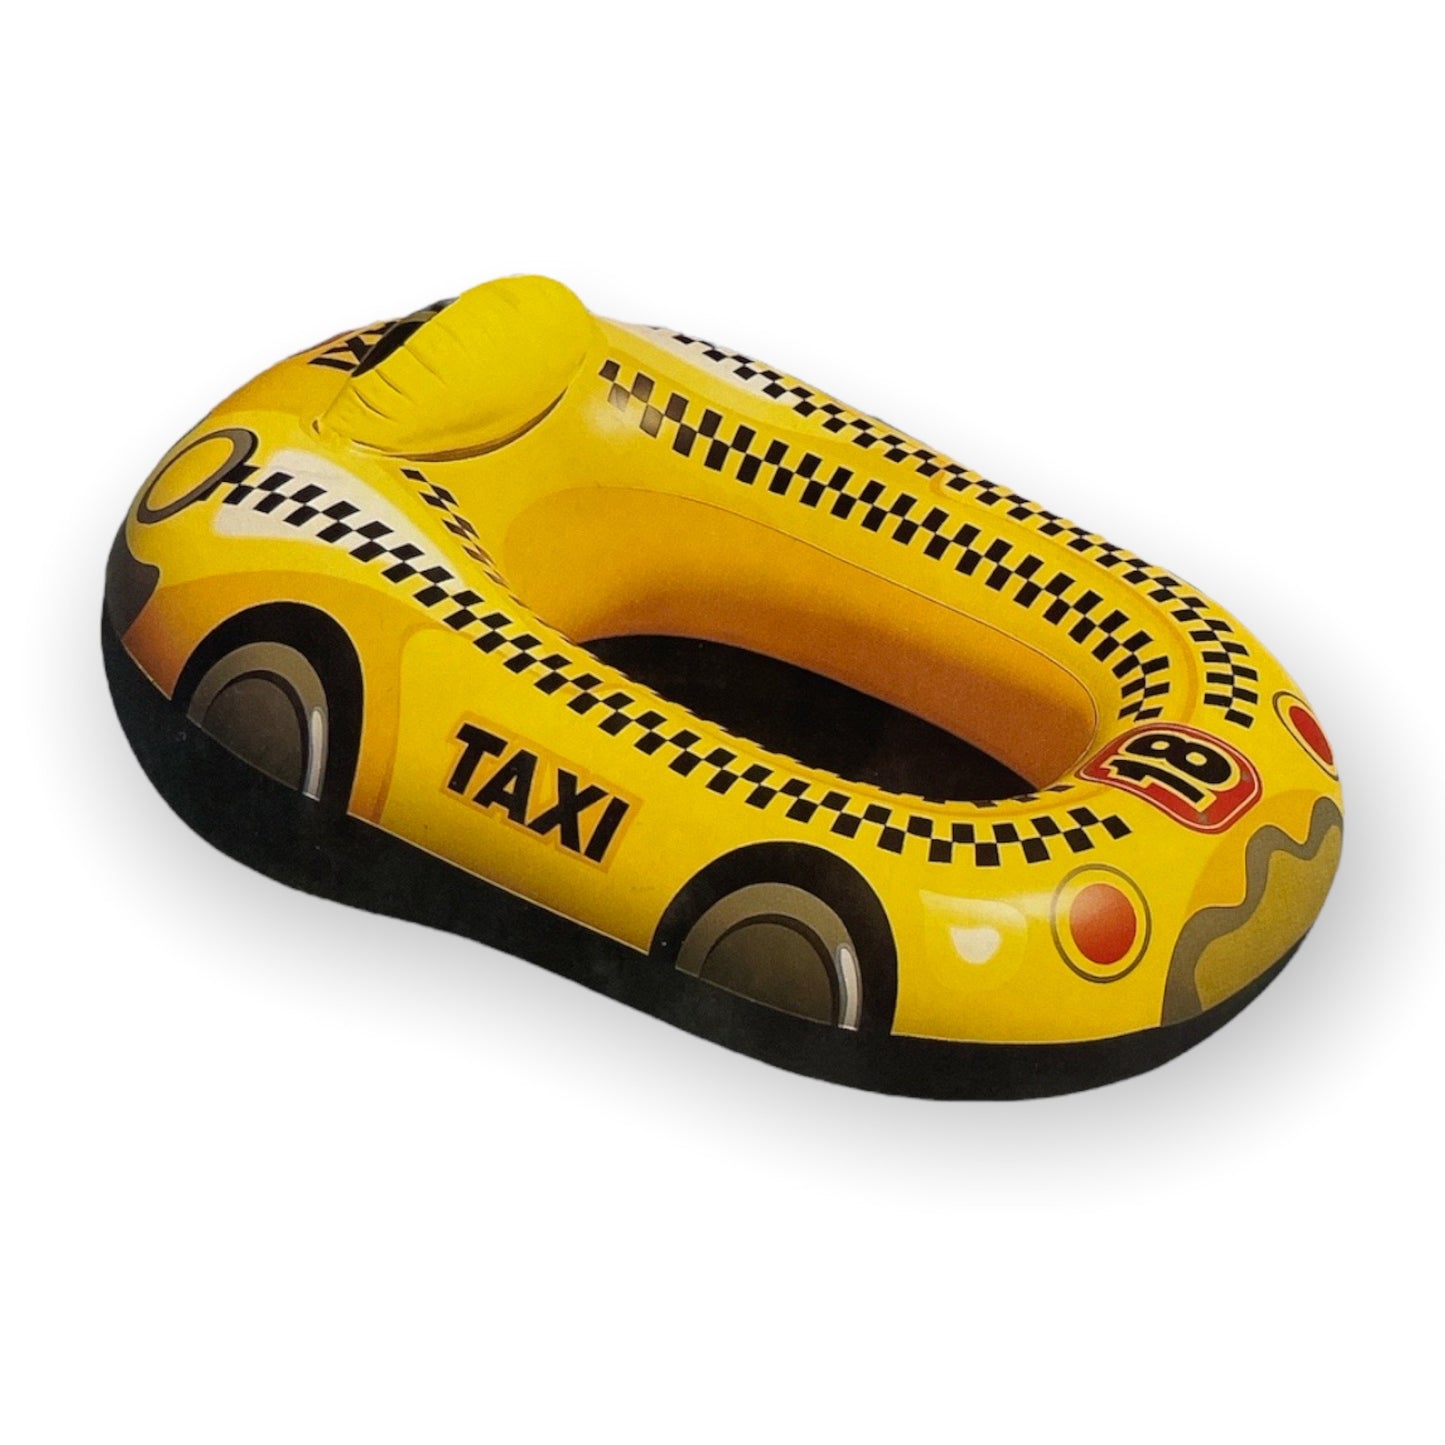 Intex Taxi Bootje 3 Modellen- Perfect Speelgoed voor Kinderen om Mee te Spelen in het Zwembad